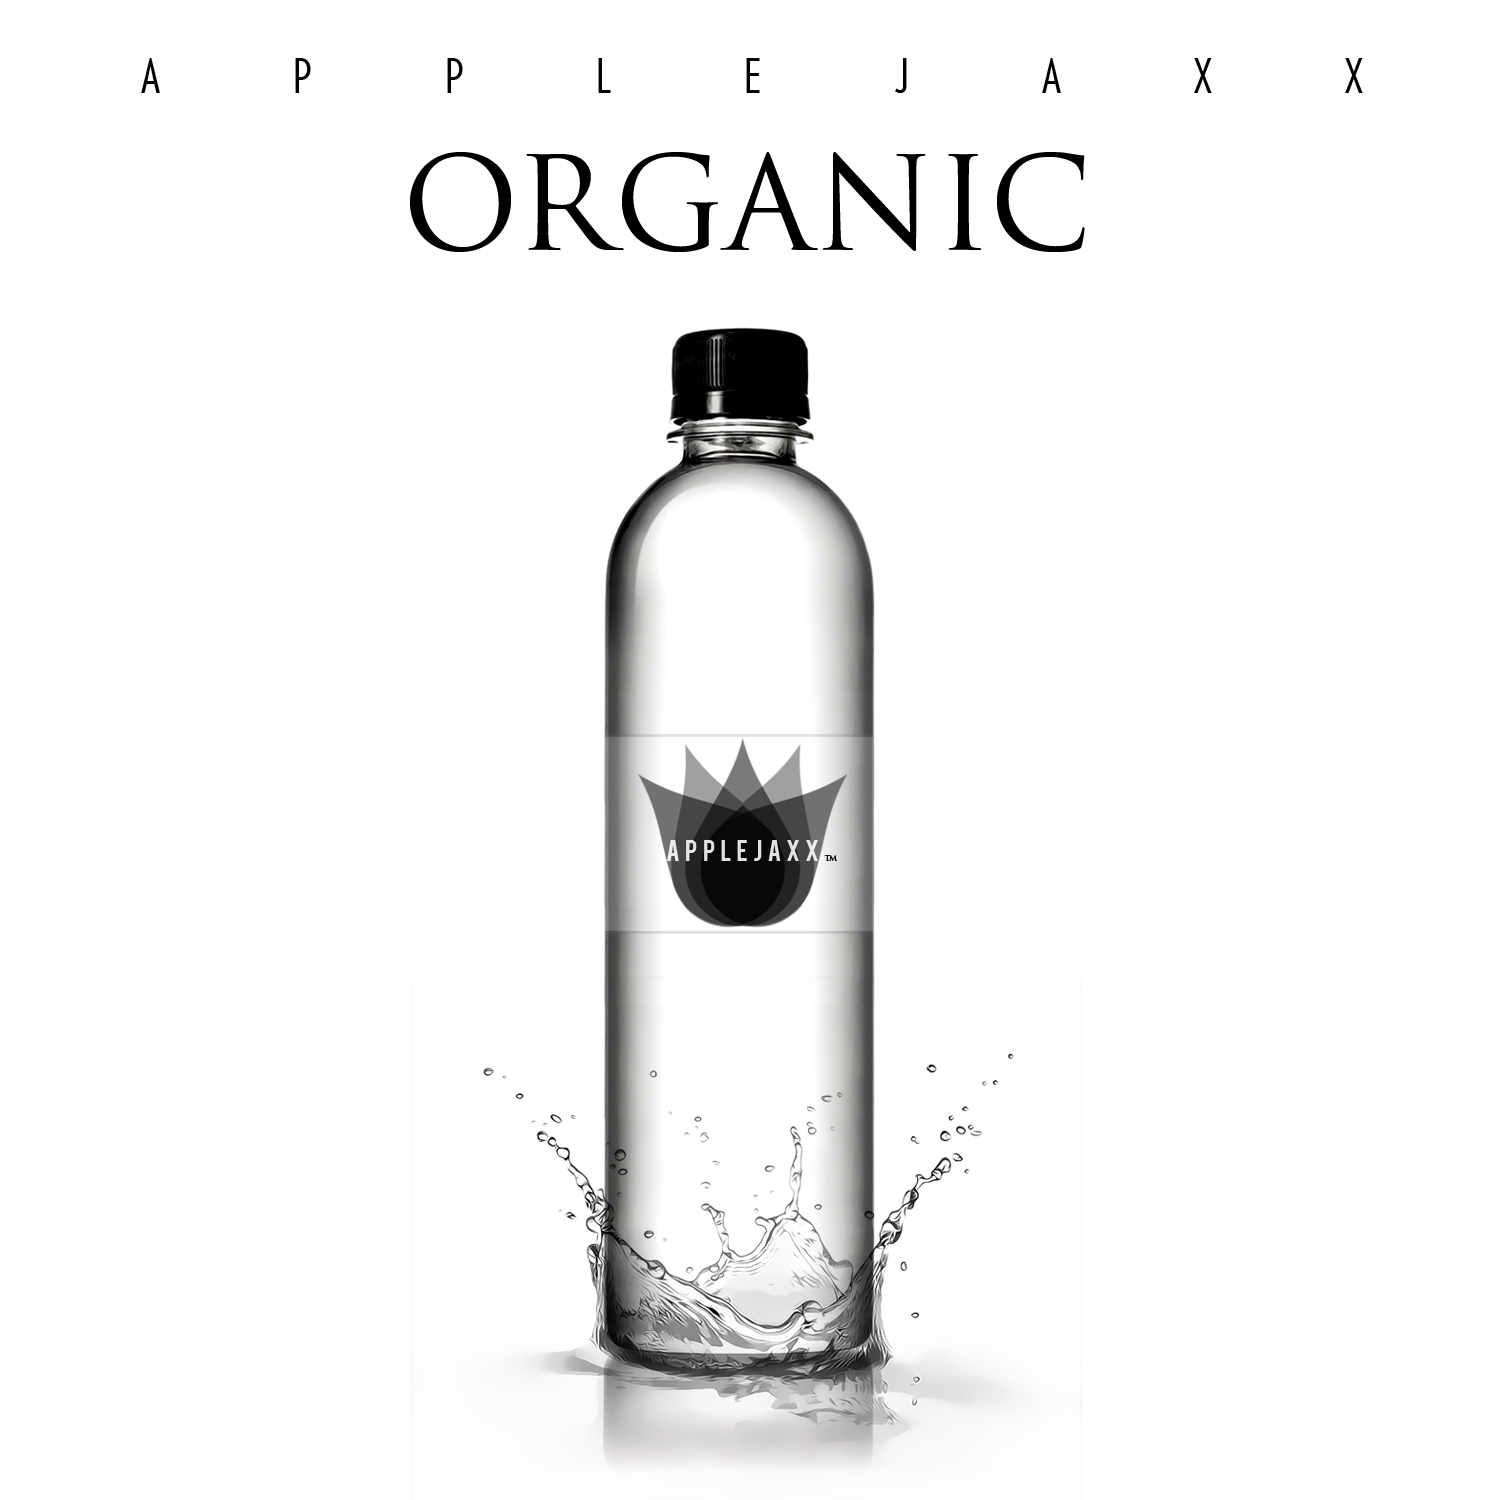 Organic-album-cover